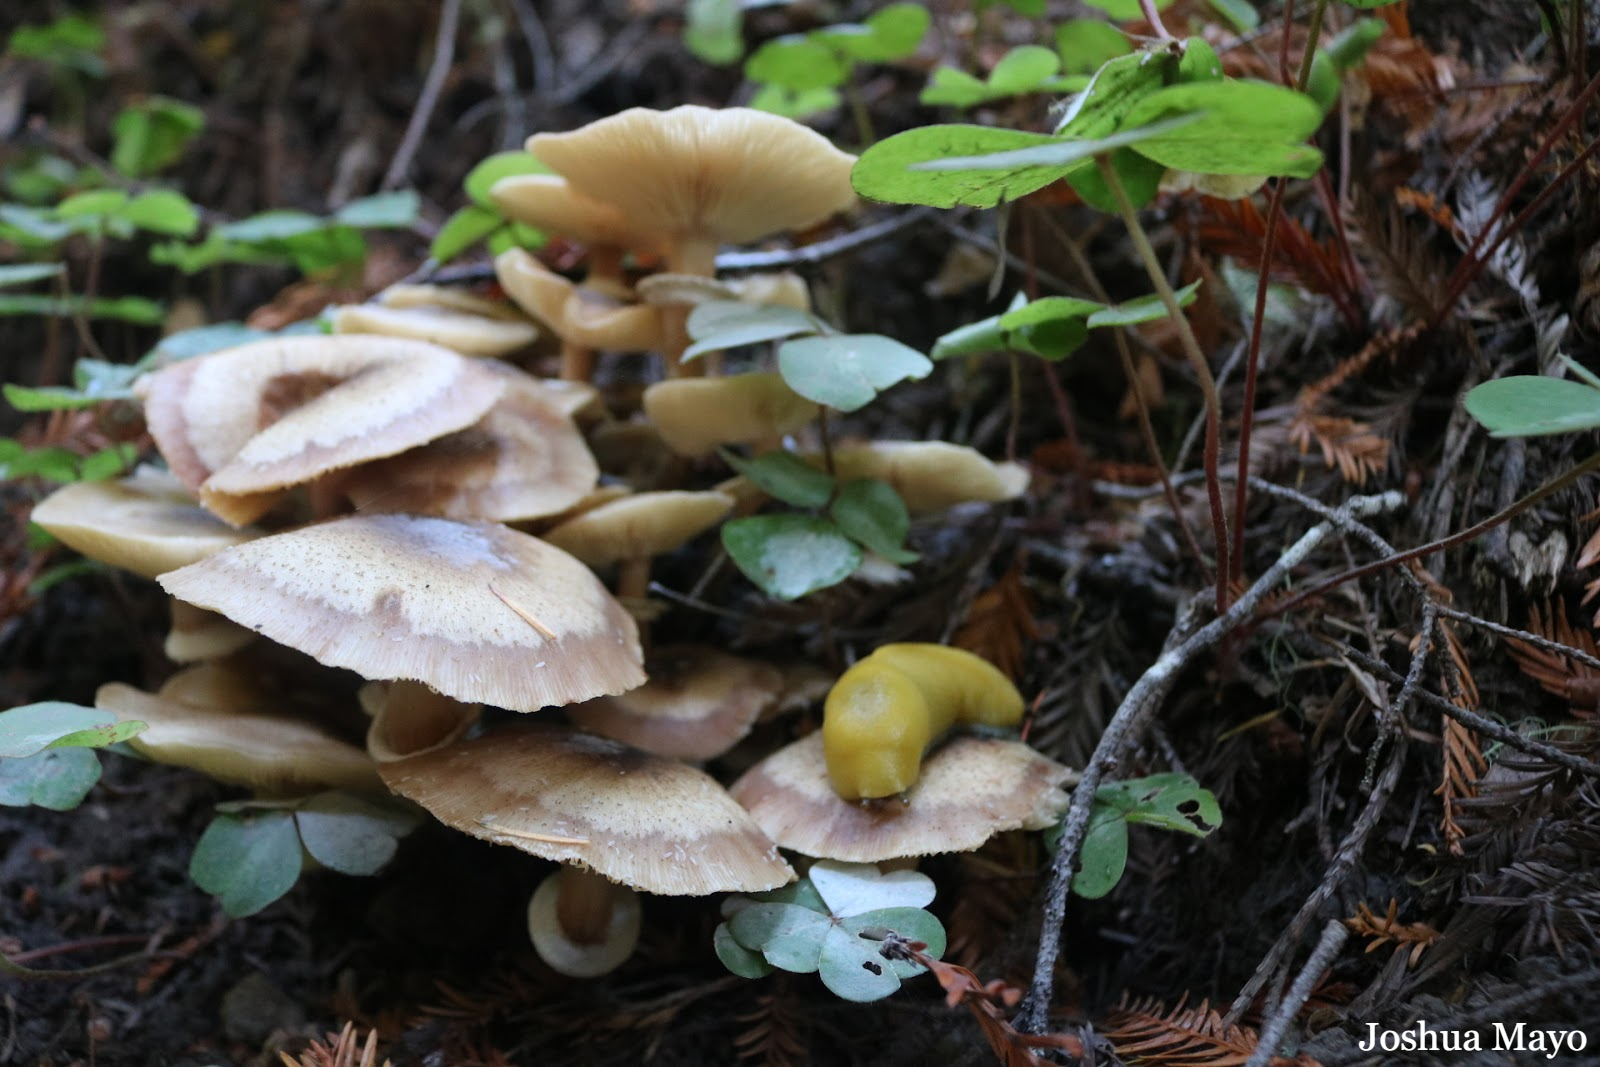 bannana slug on mushrooms